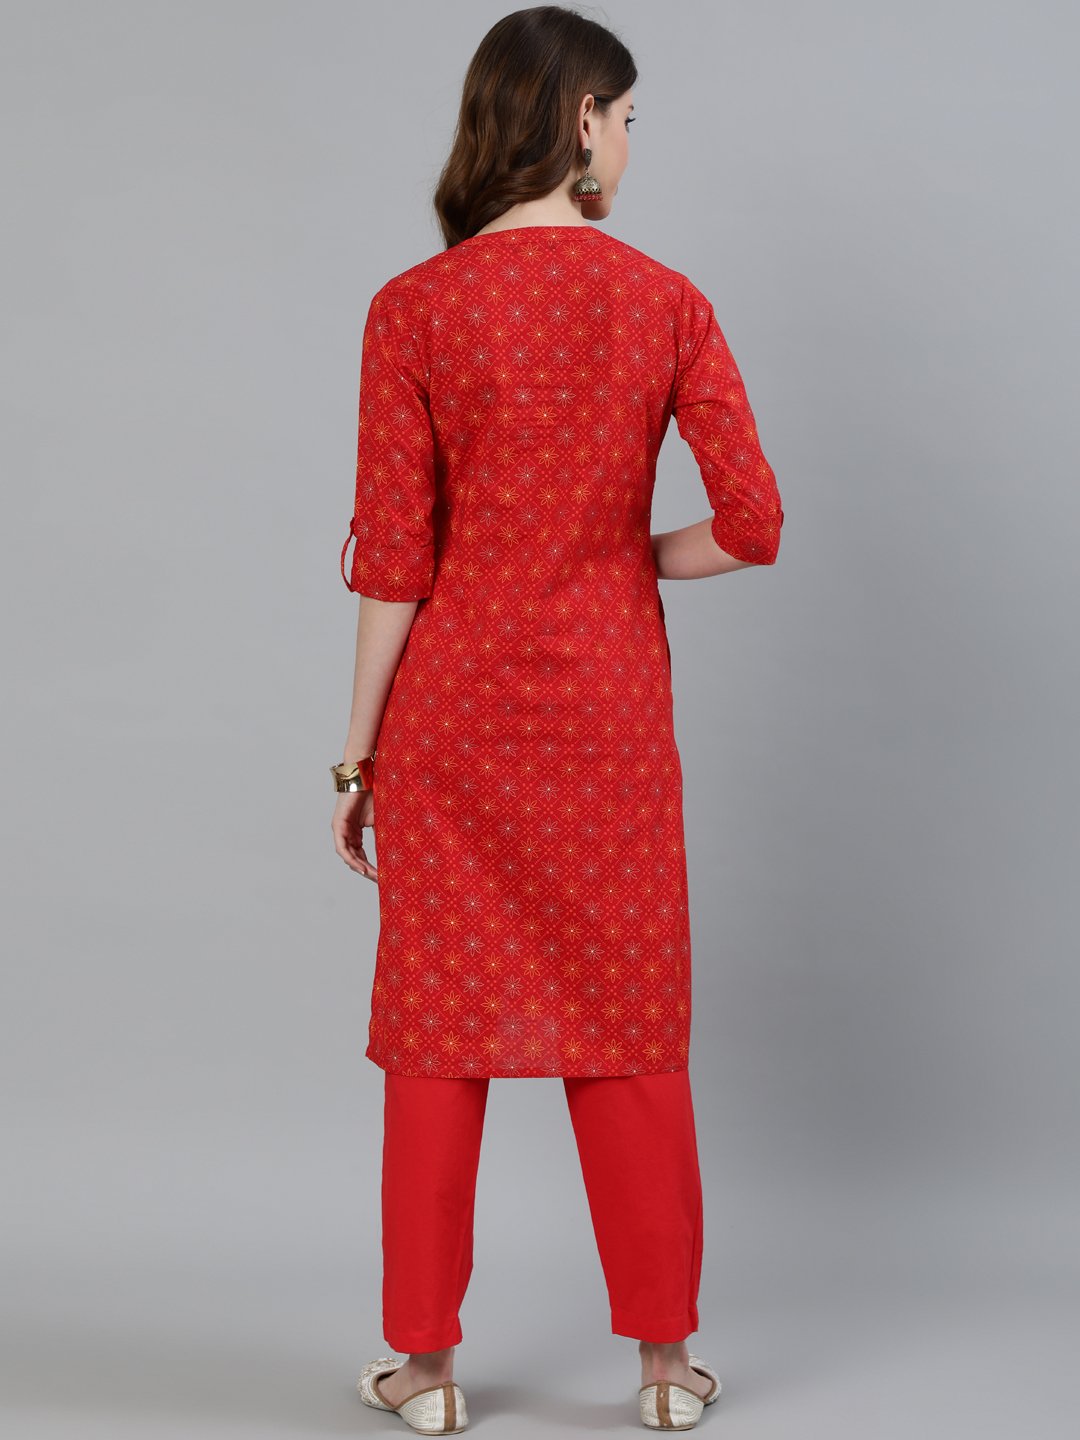 Ishin Women's Red Checks Printed Straight Kurta With Trouser